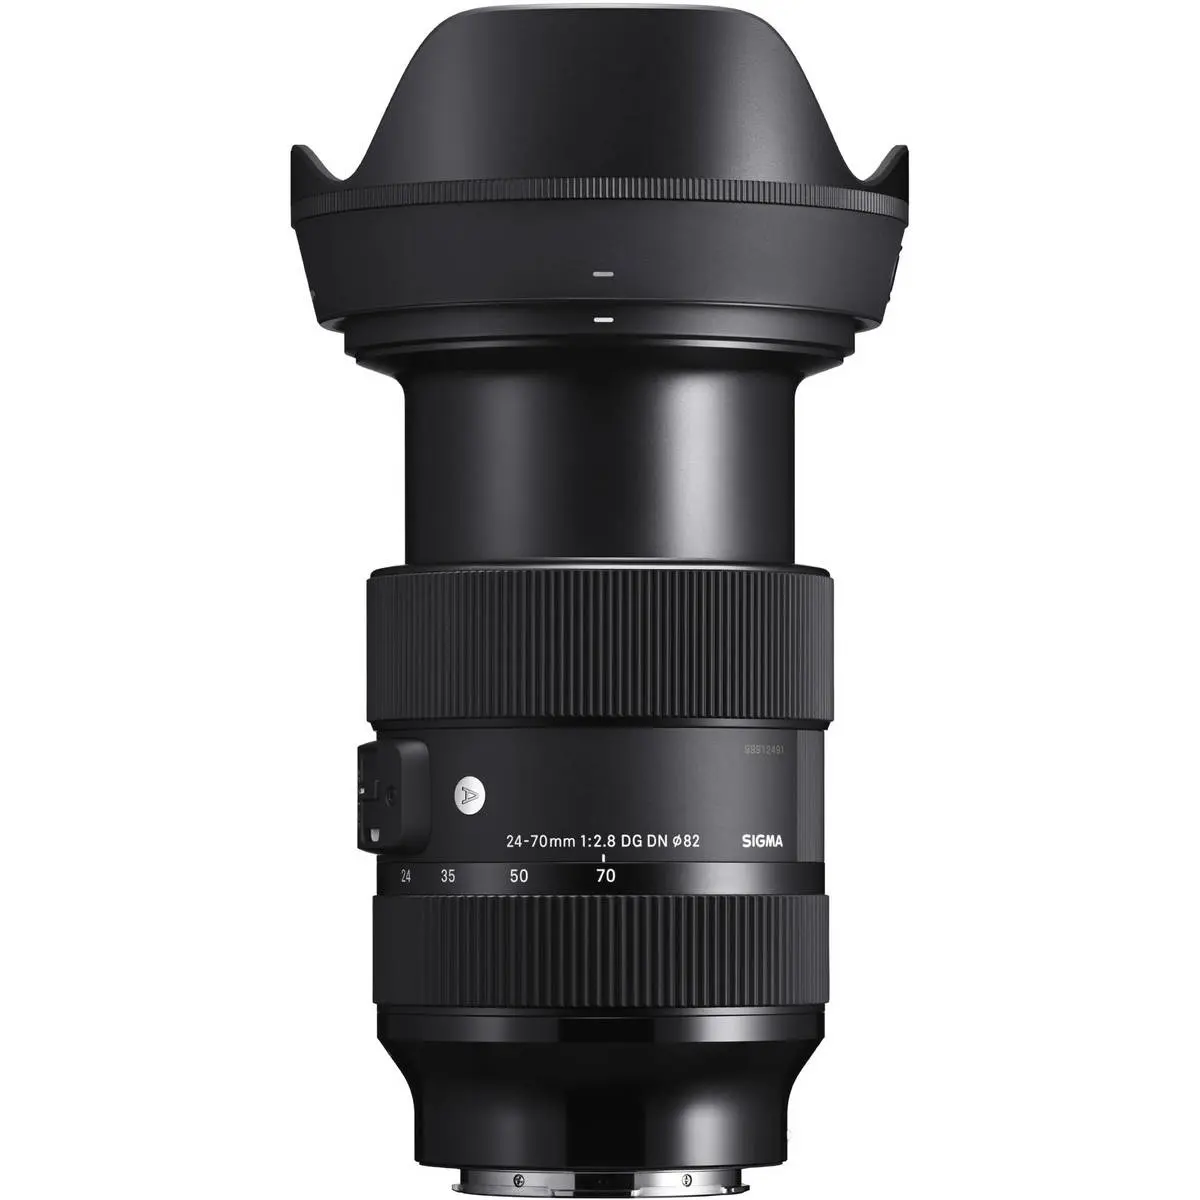 2. Sigma 24-70mm F2.8 DG DN | Art (Leica L) Lens